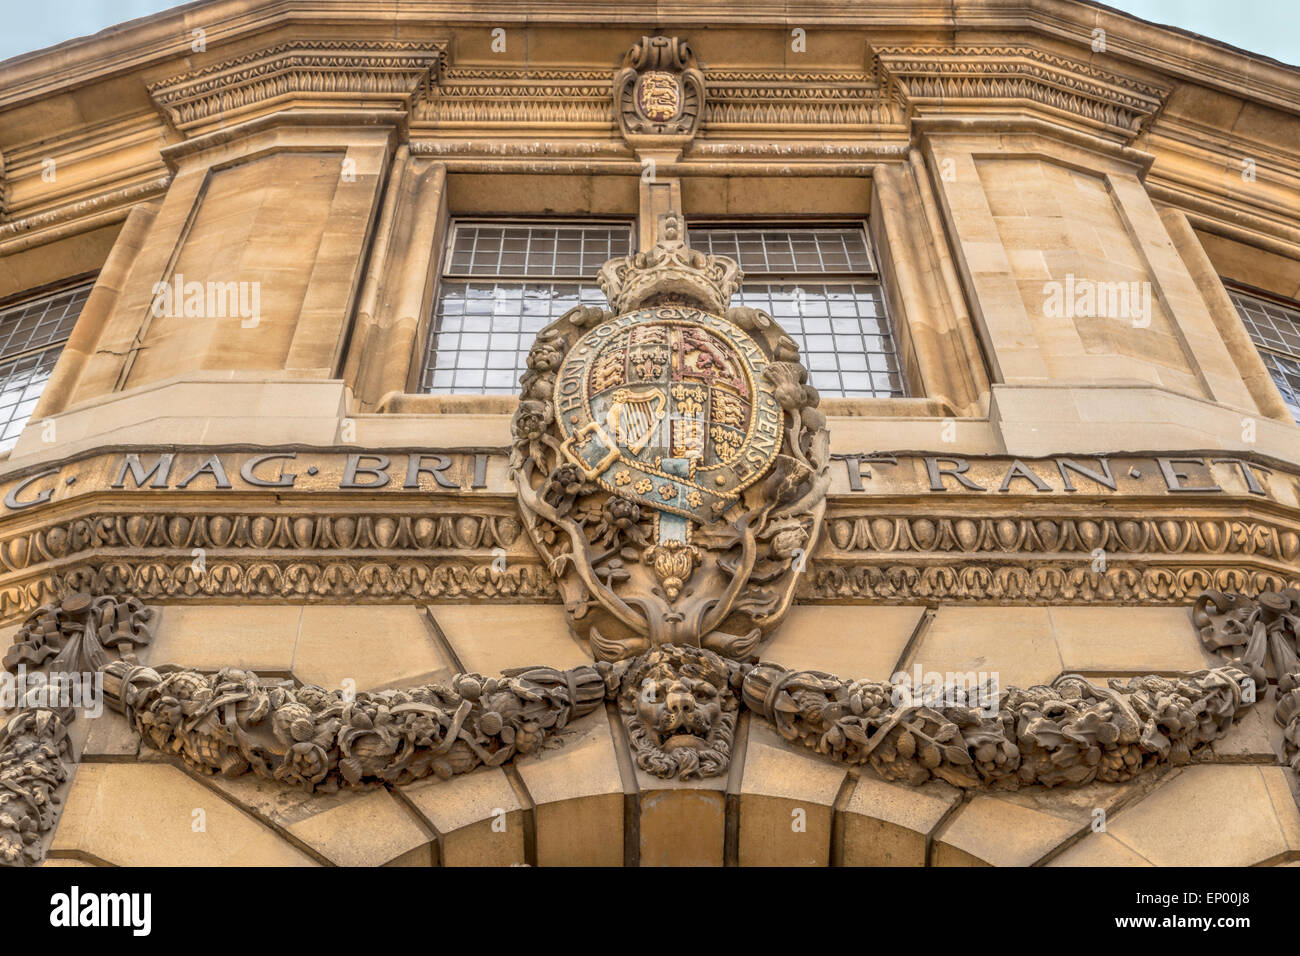 Armoiries ornant la façade du Théâtre Sheldonian, conçu par Christopher Wren, à Oxford, Angleterre, Royaume-Uni. Banque D'Images